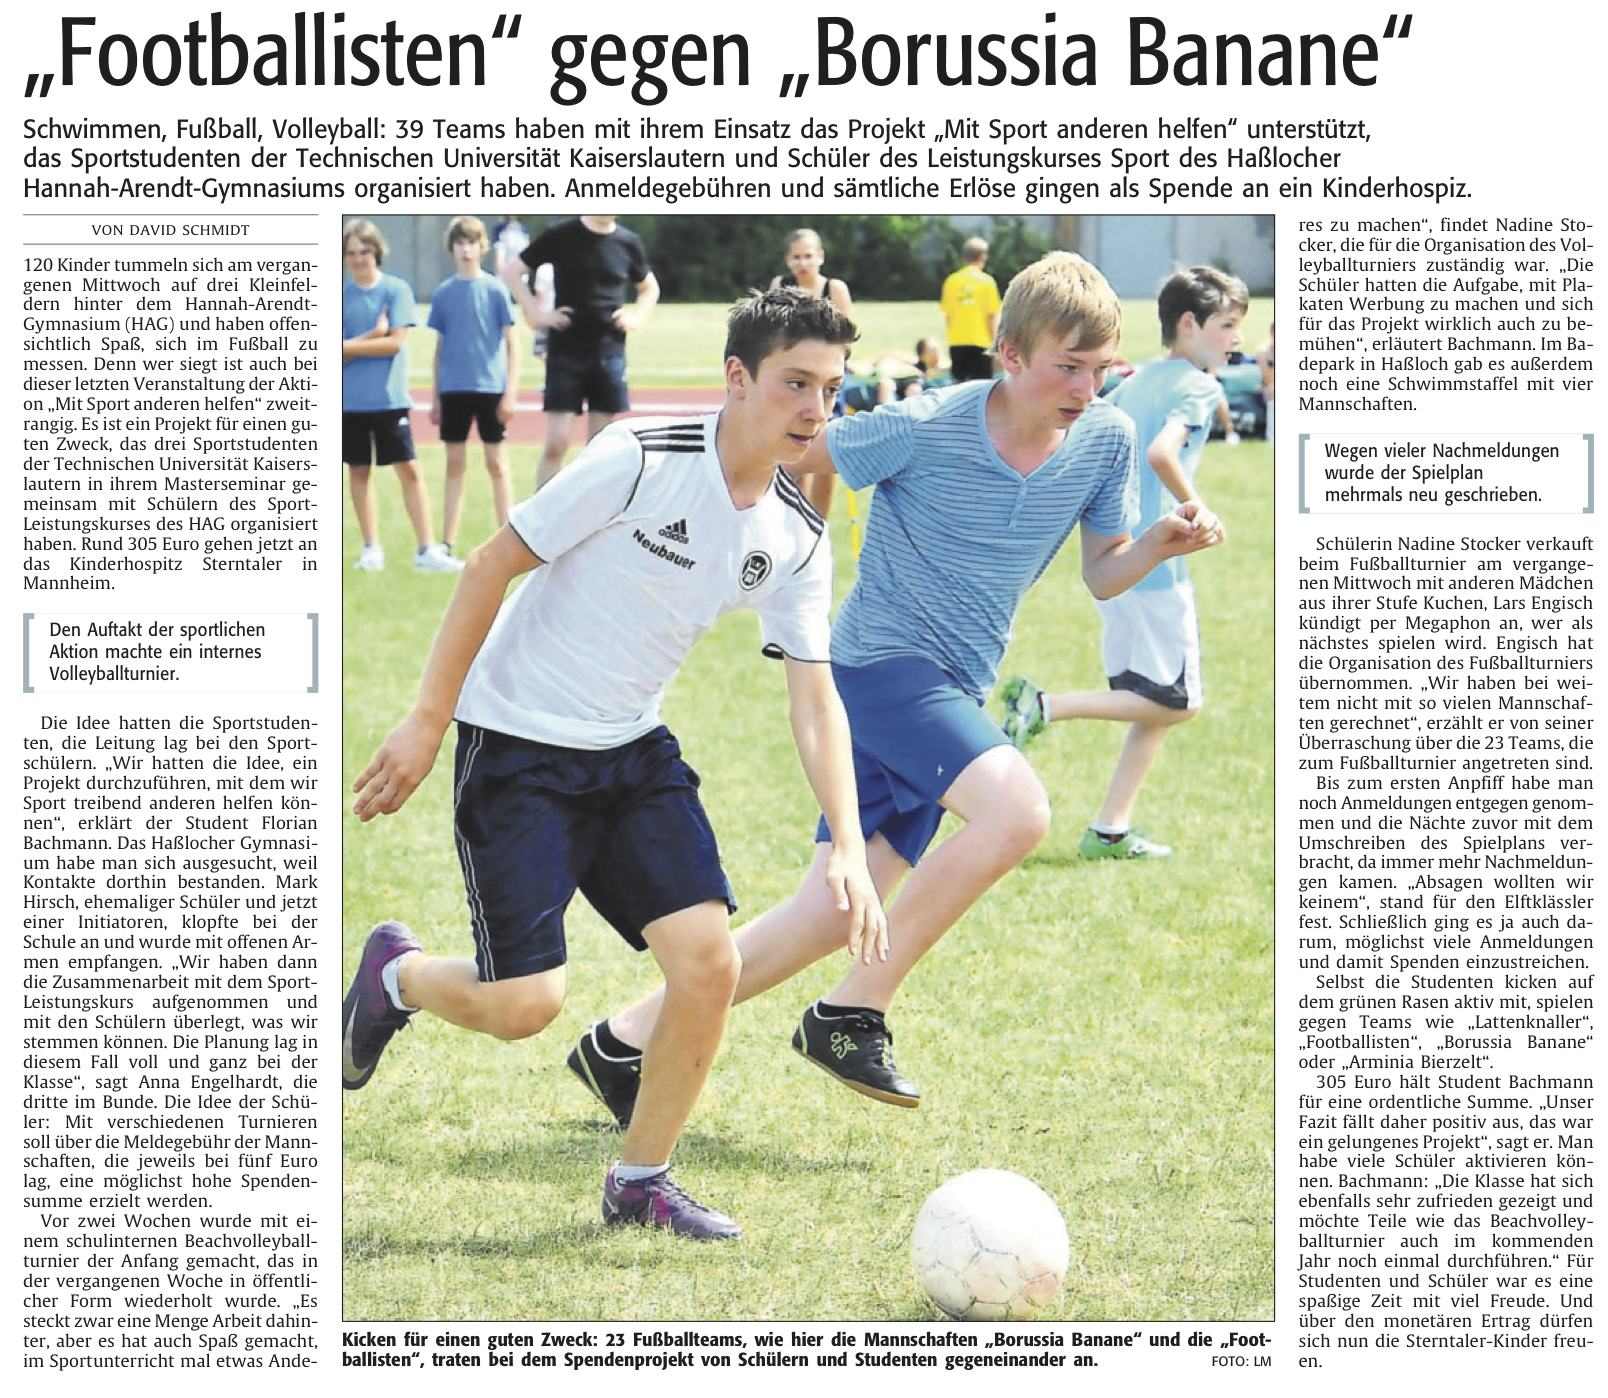 Die Rheinpfalz vom 4.7.2012 - Footballisten gegen Borussia Banana